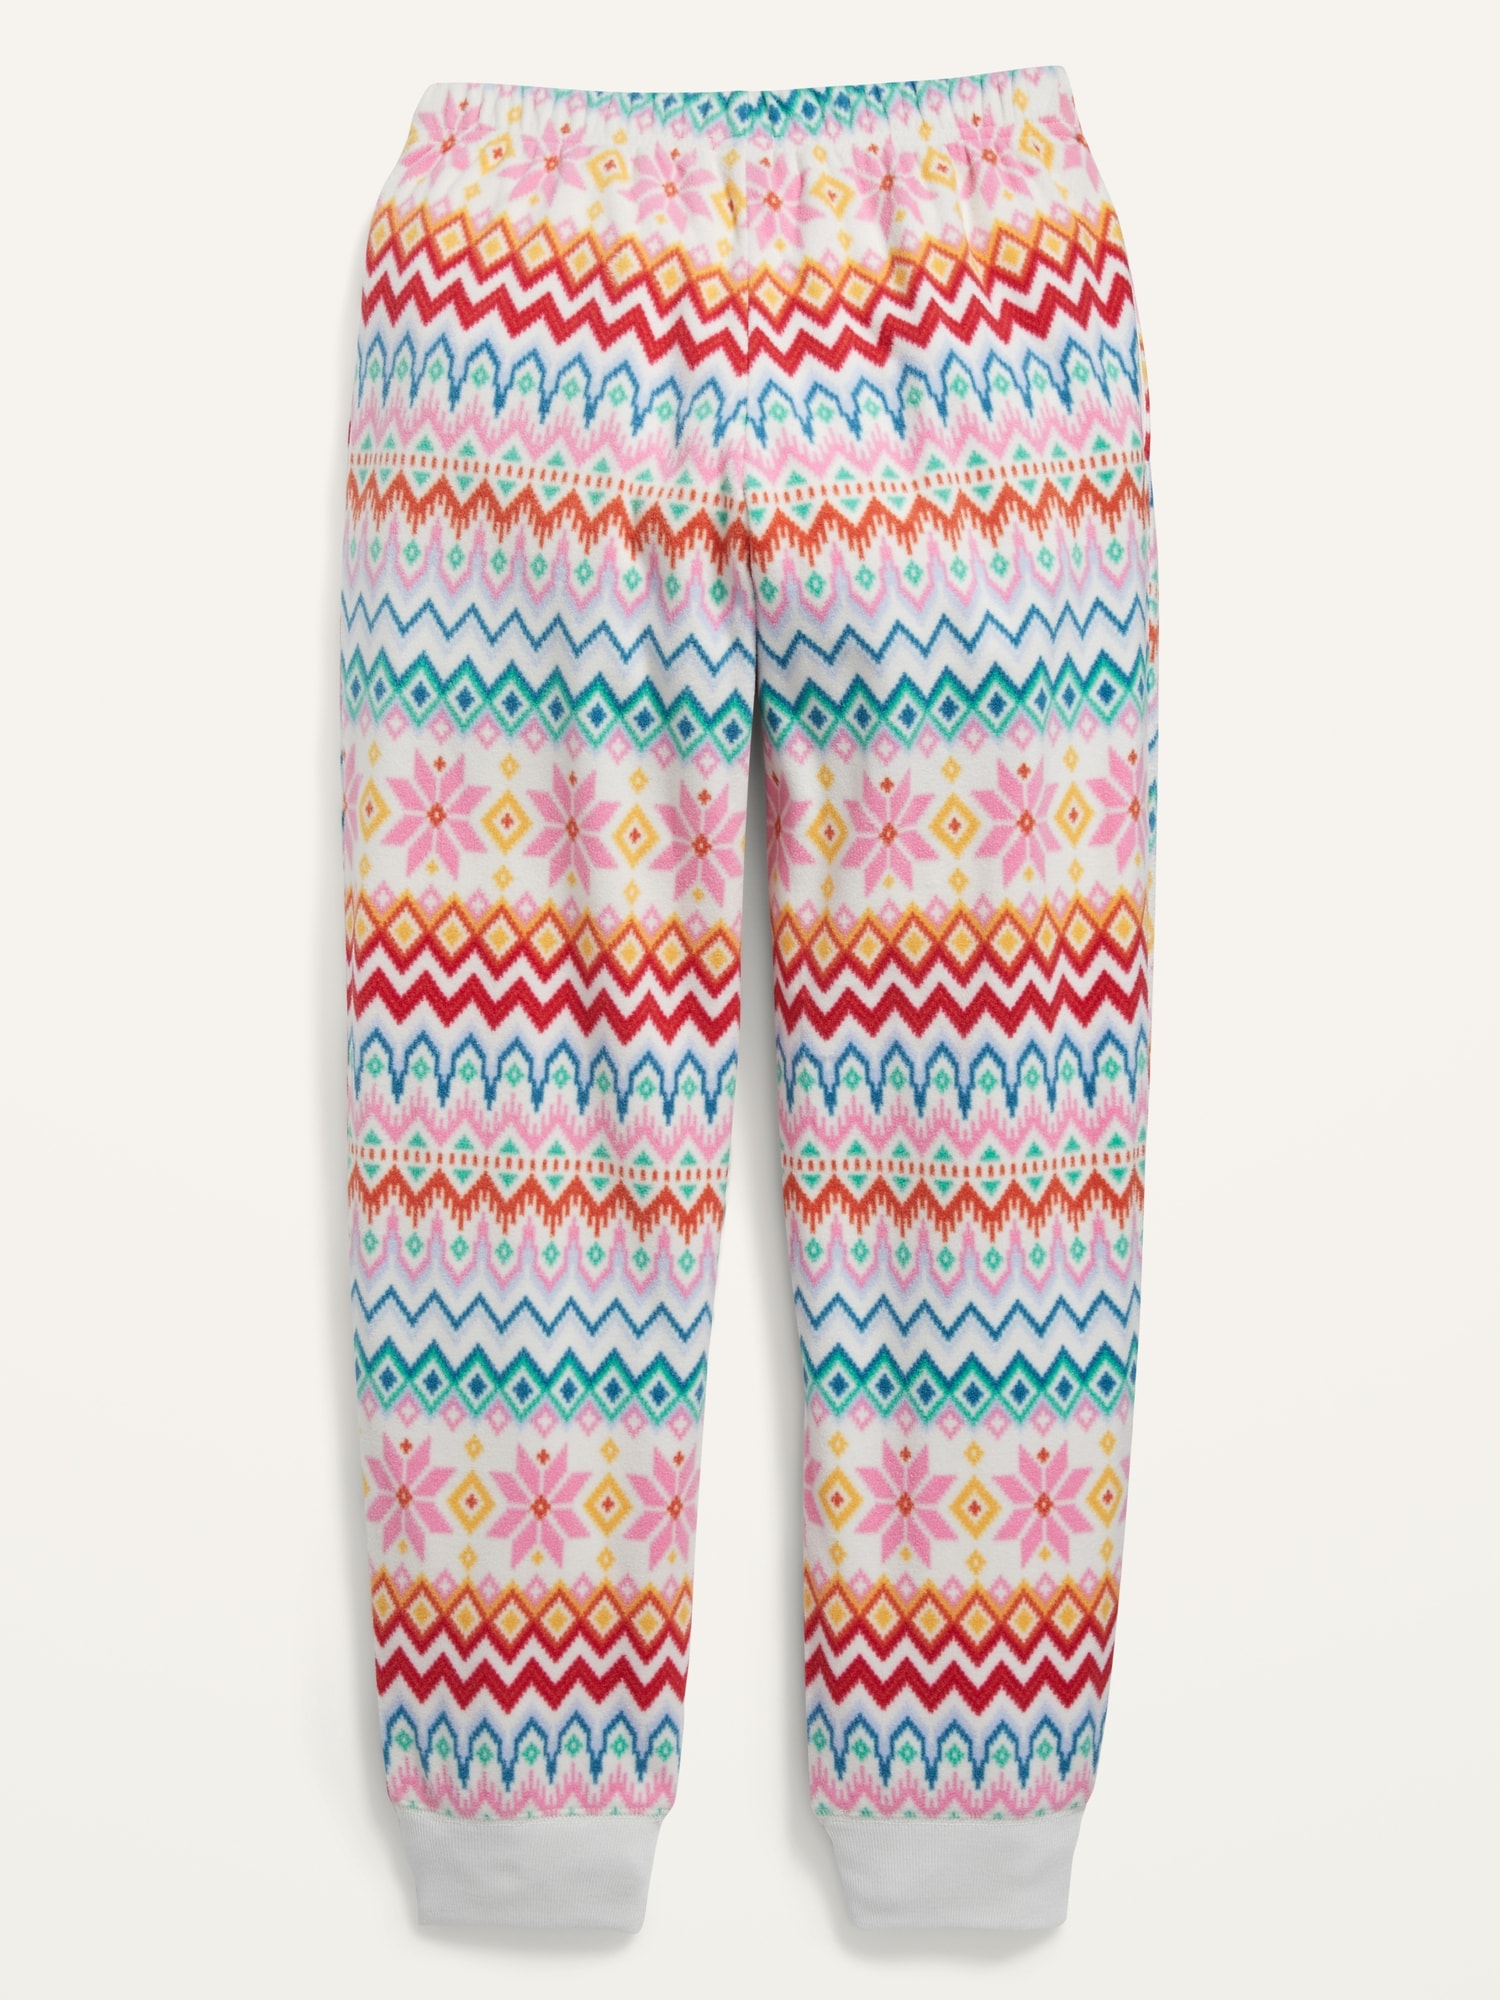 Printed Microfleece Pajama Jogger Pants for Girls